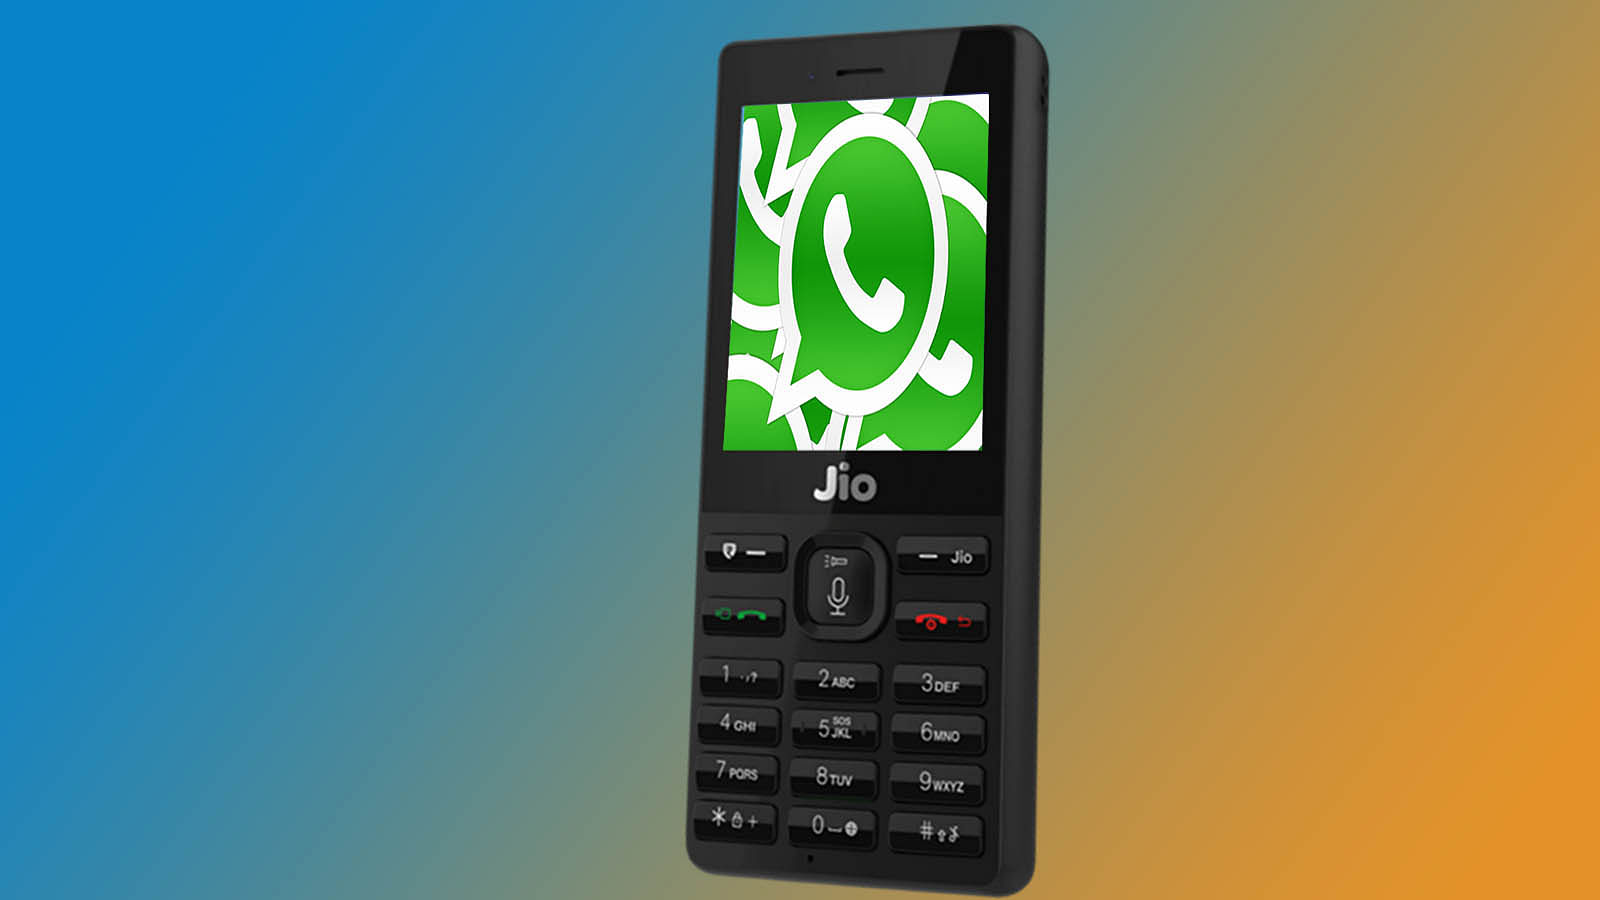 WhatsApp runs on basic devices like JioPhone in India.